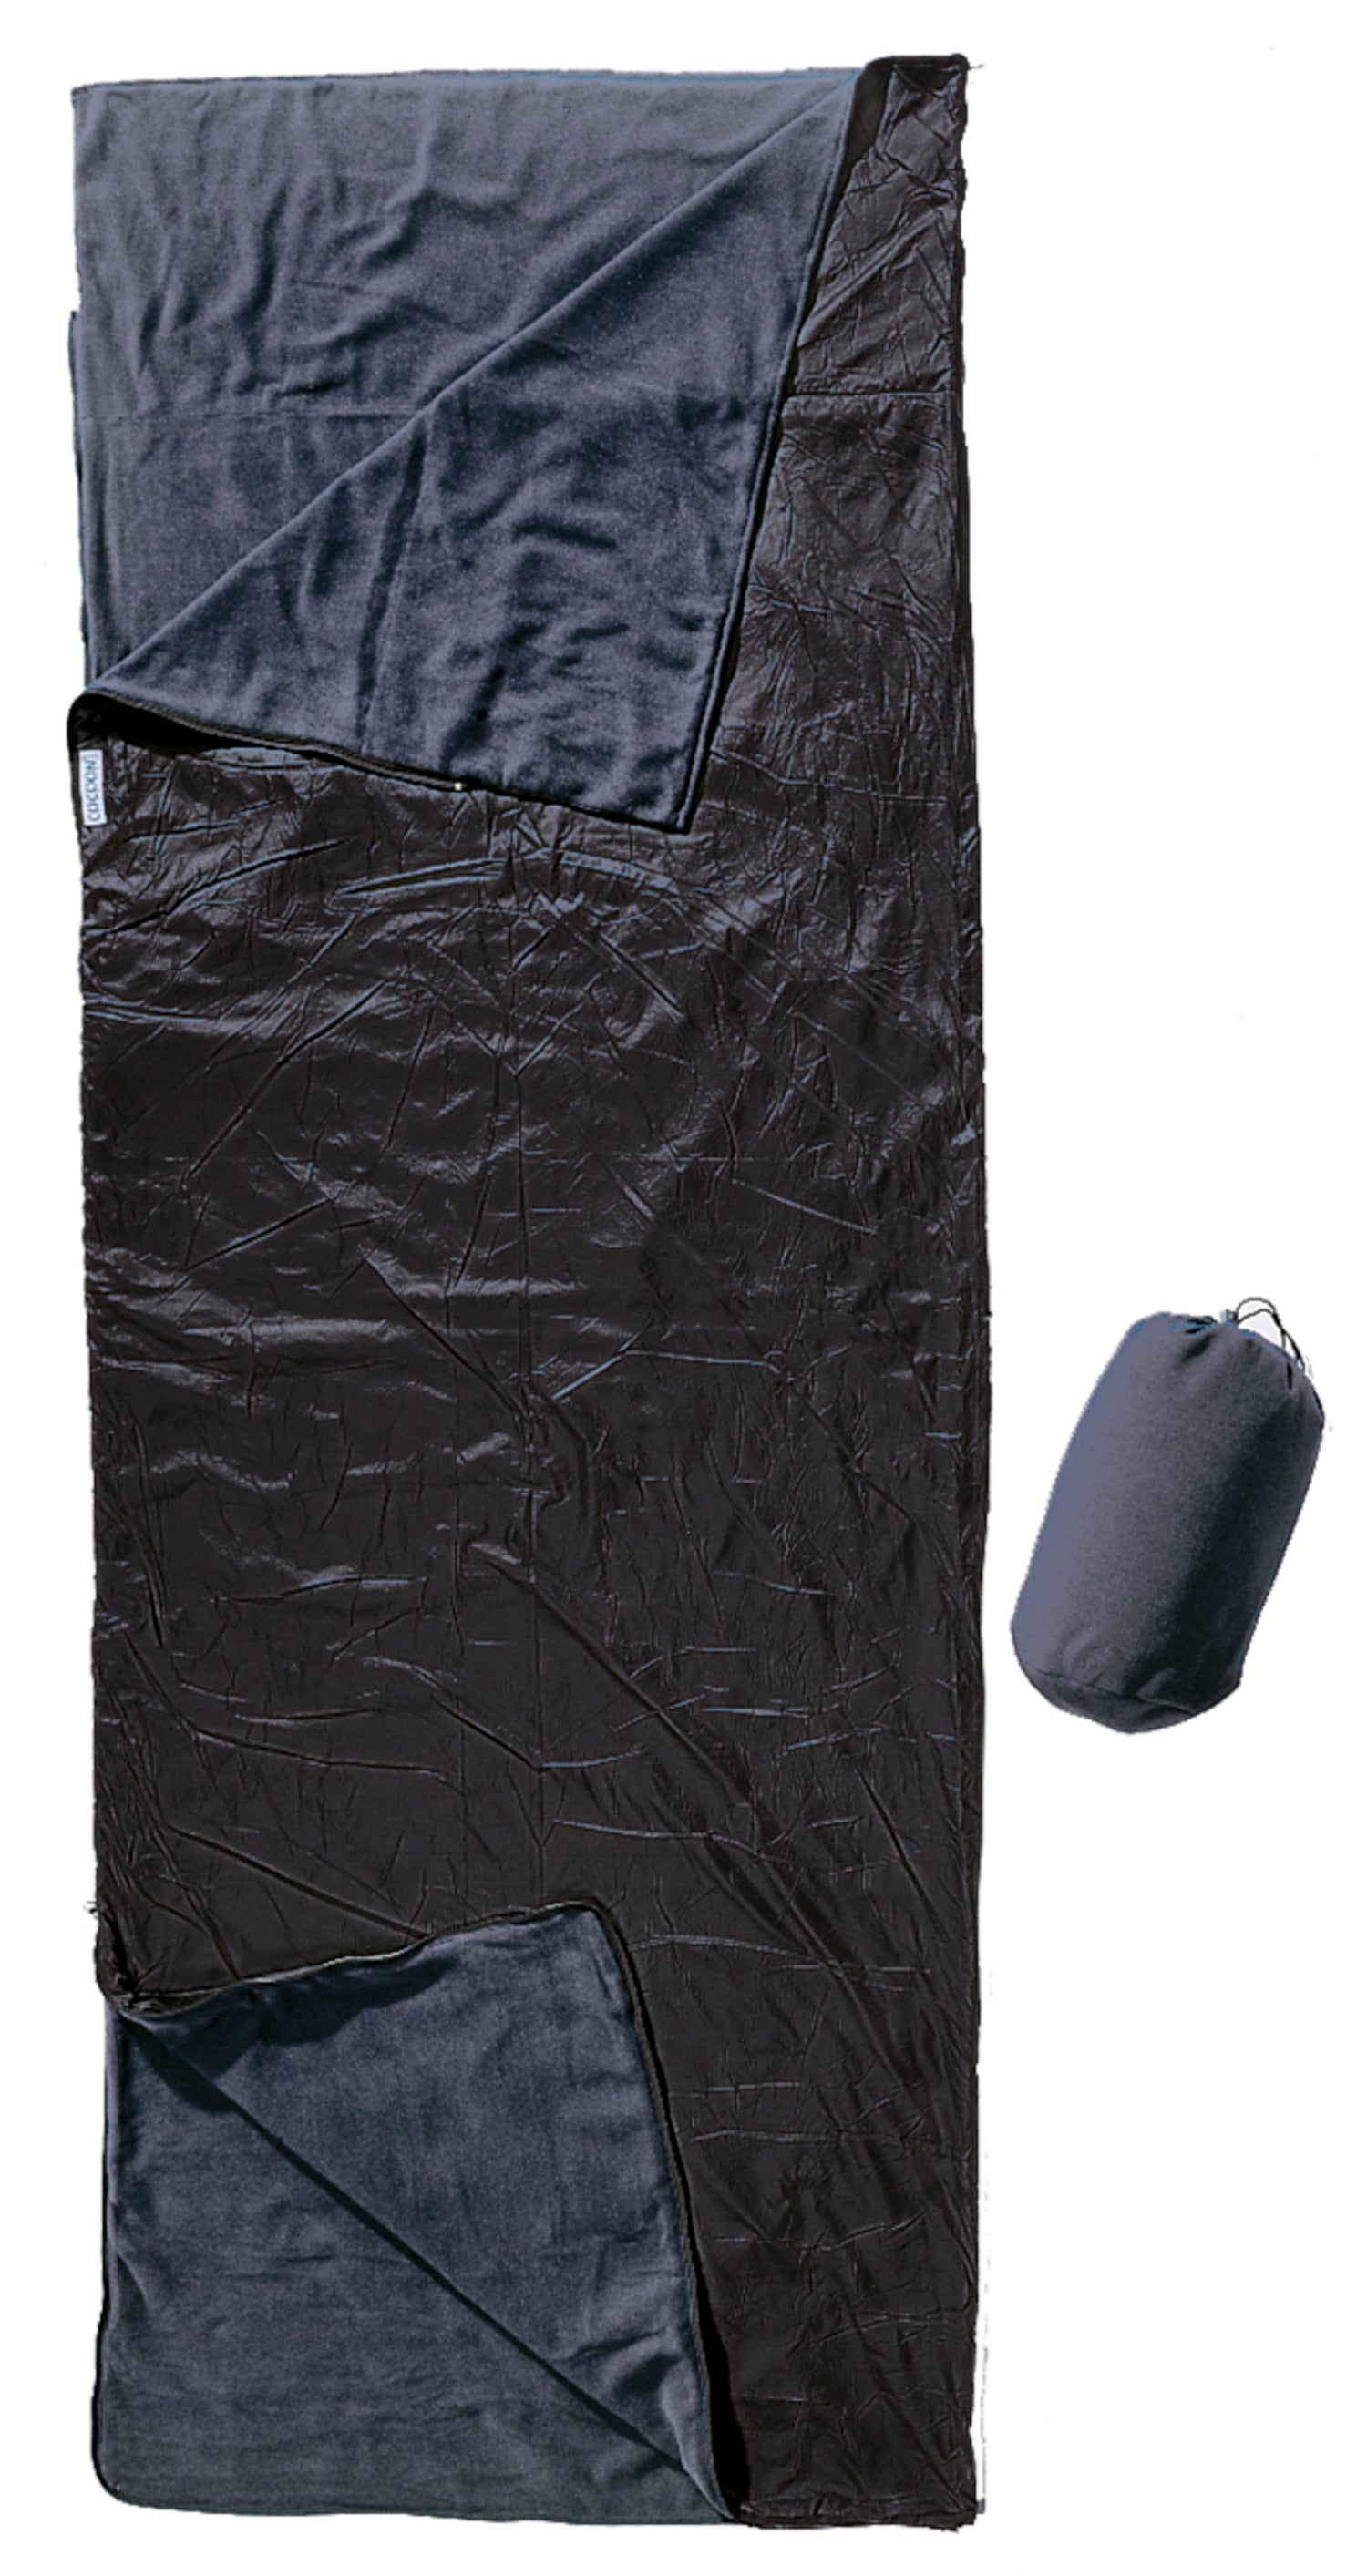 Cocoon Outdoor Blanket/SleepingBag black/slate blue